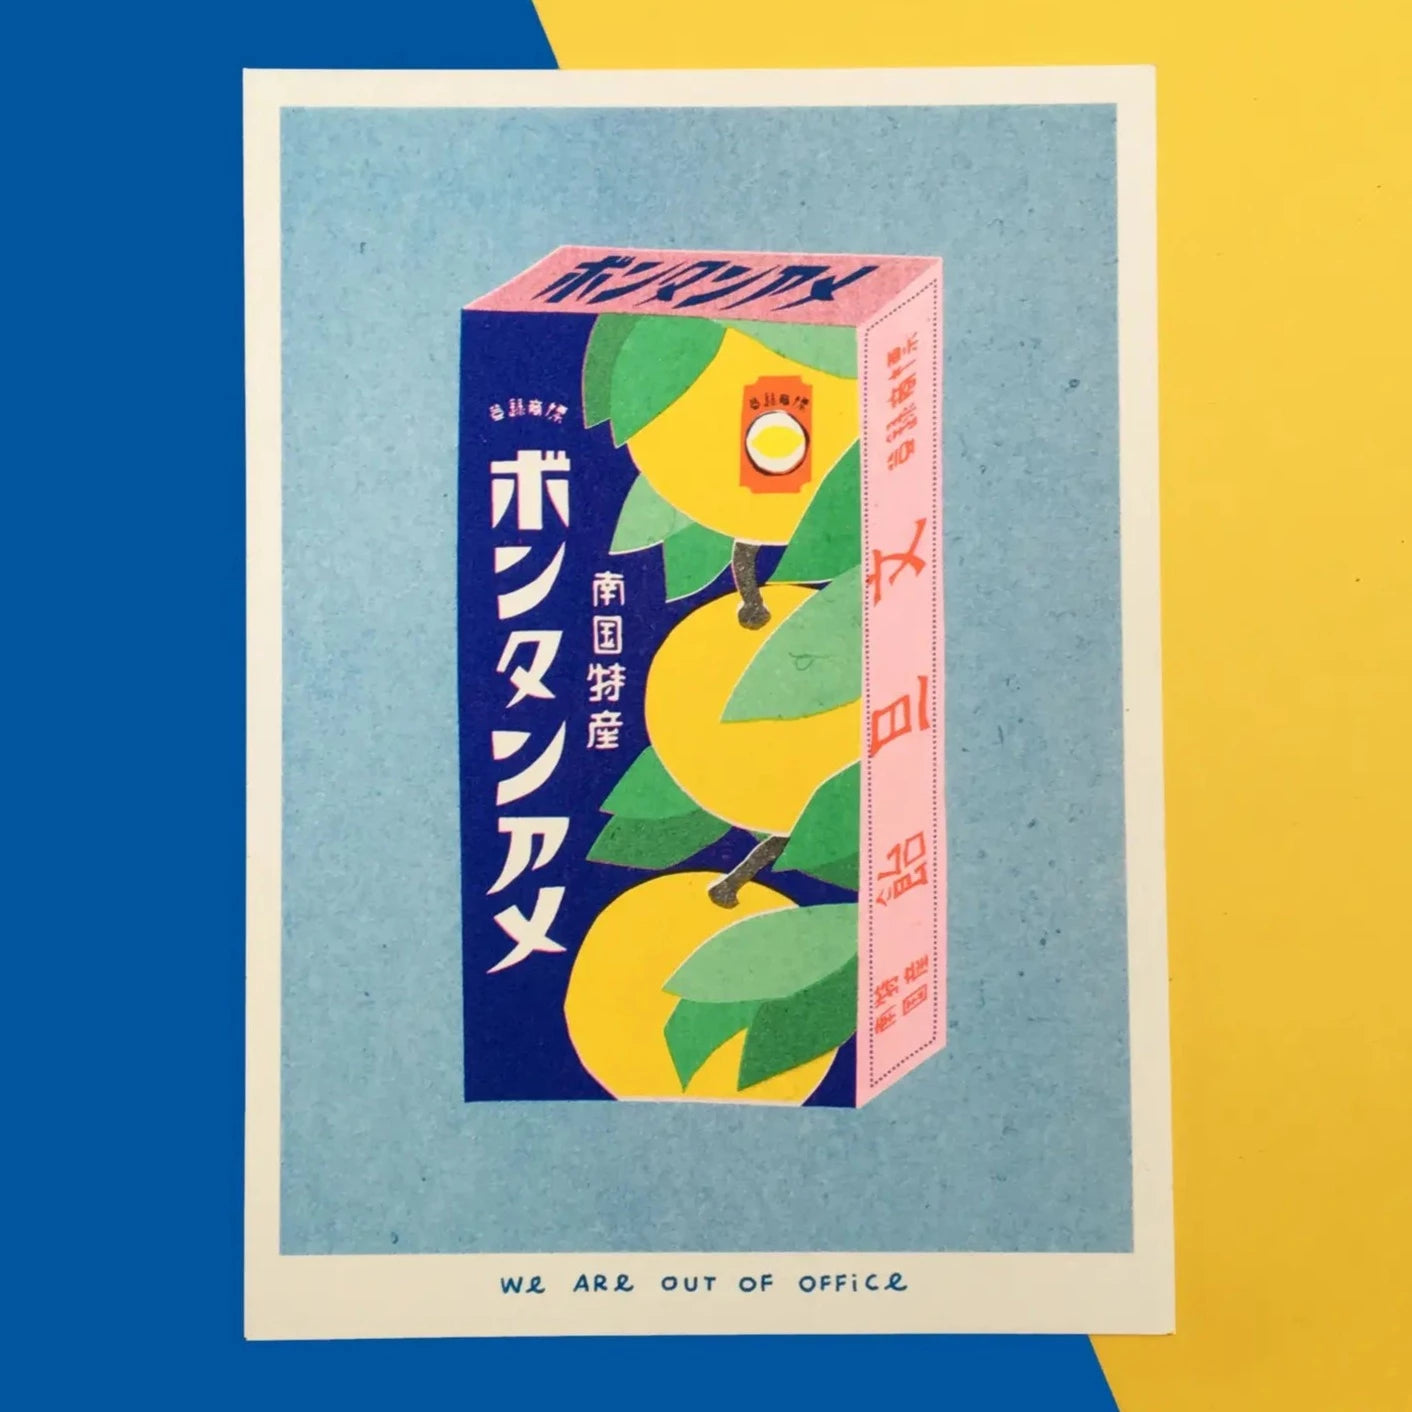 Riso Print A Box of Bontan Ame Candy - P I C N I C 